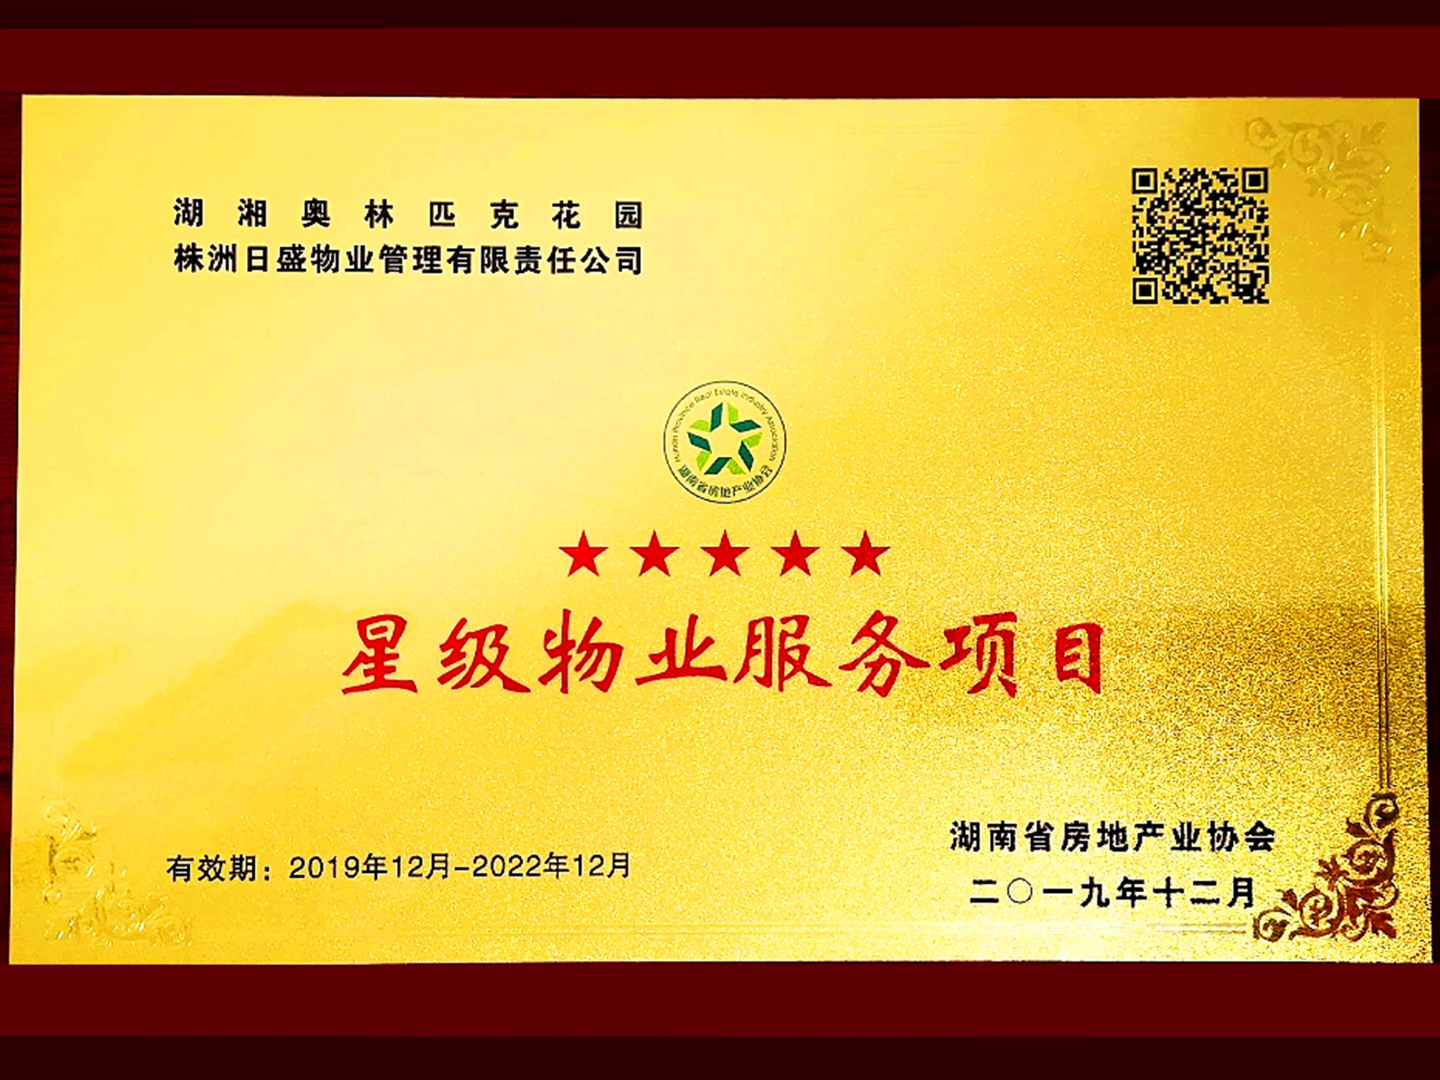 公司湖湘奧林匹克花園項目獲評湖南省五星級物業服務項目